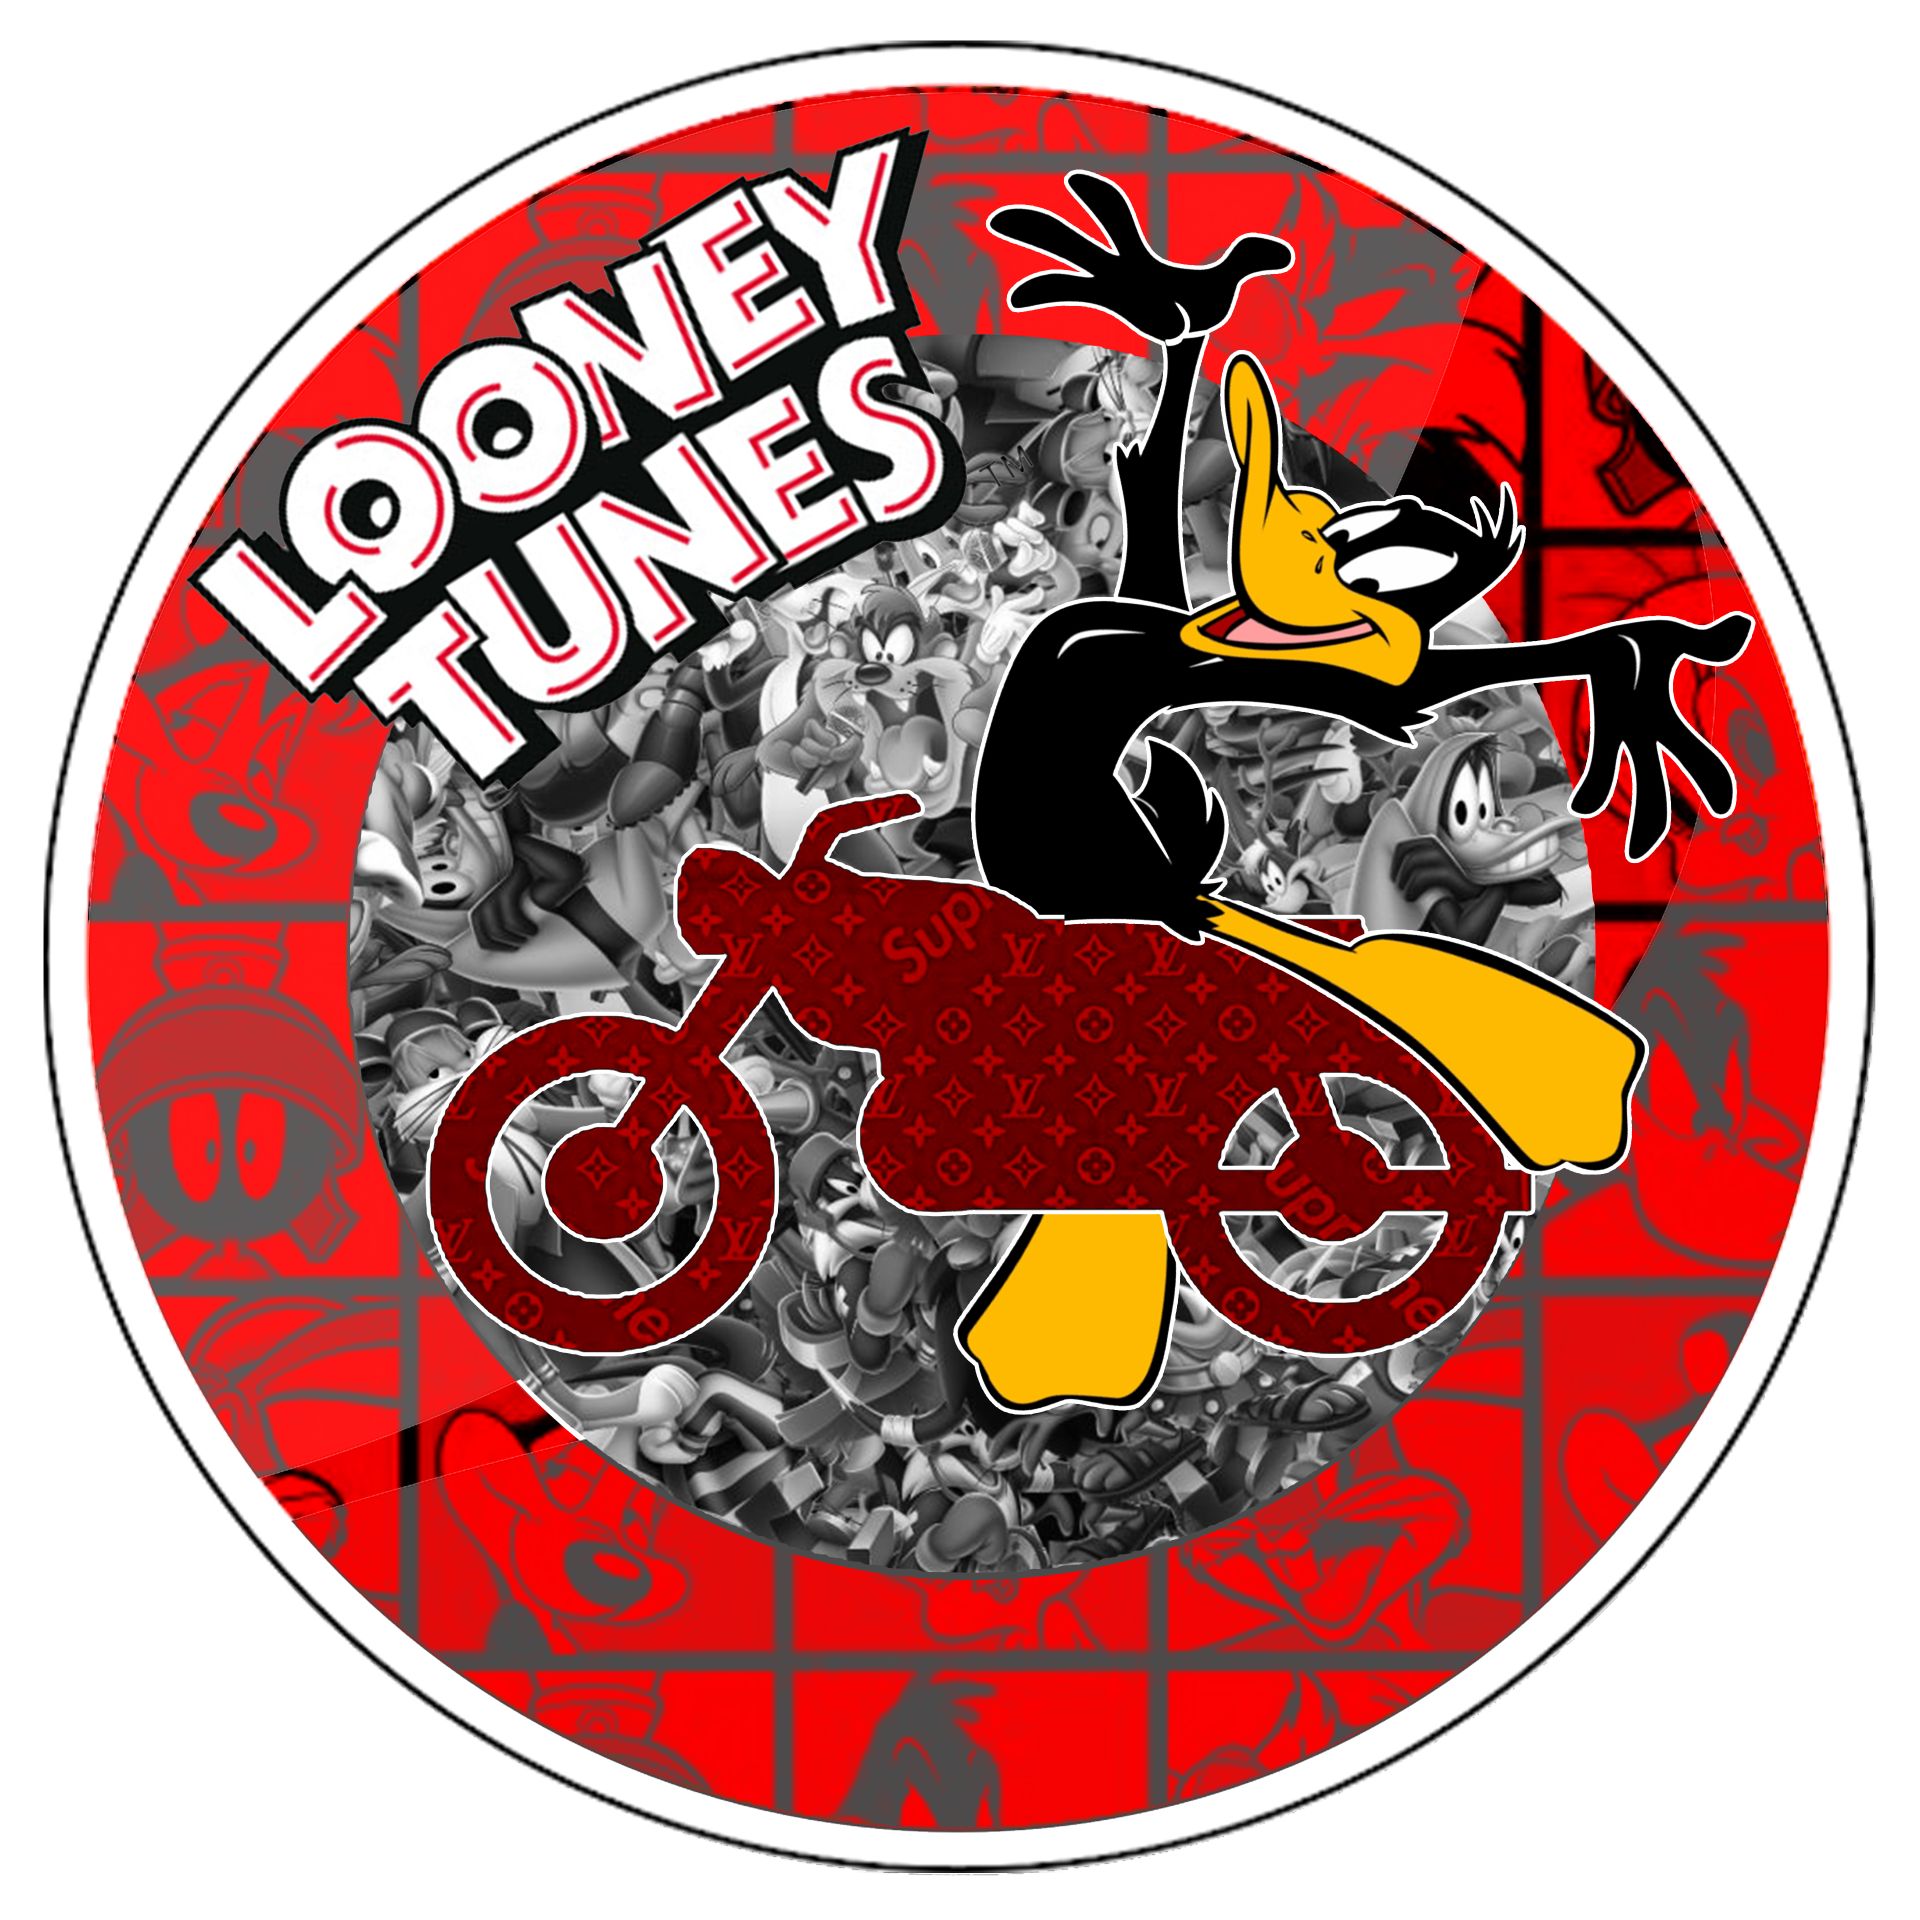 Charly Rocks (Né en 1983) Looney tunes, 2021

Señal de tráfico

Impreso en plexi&hellip;